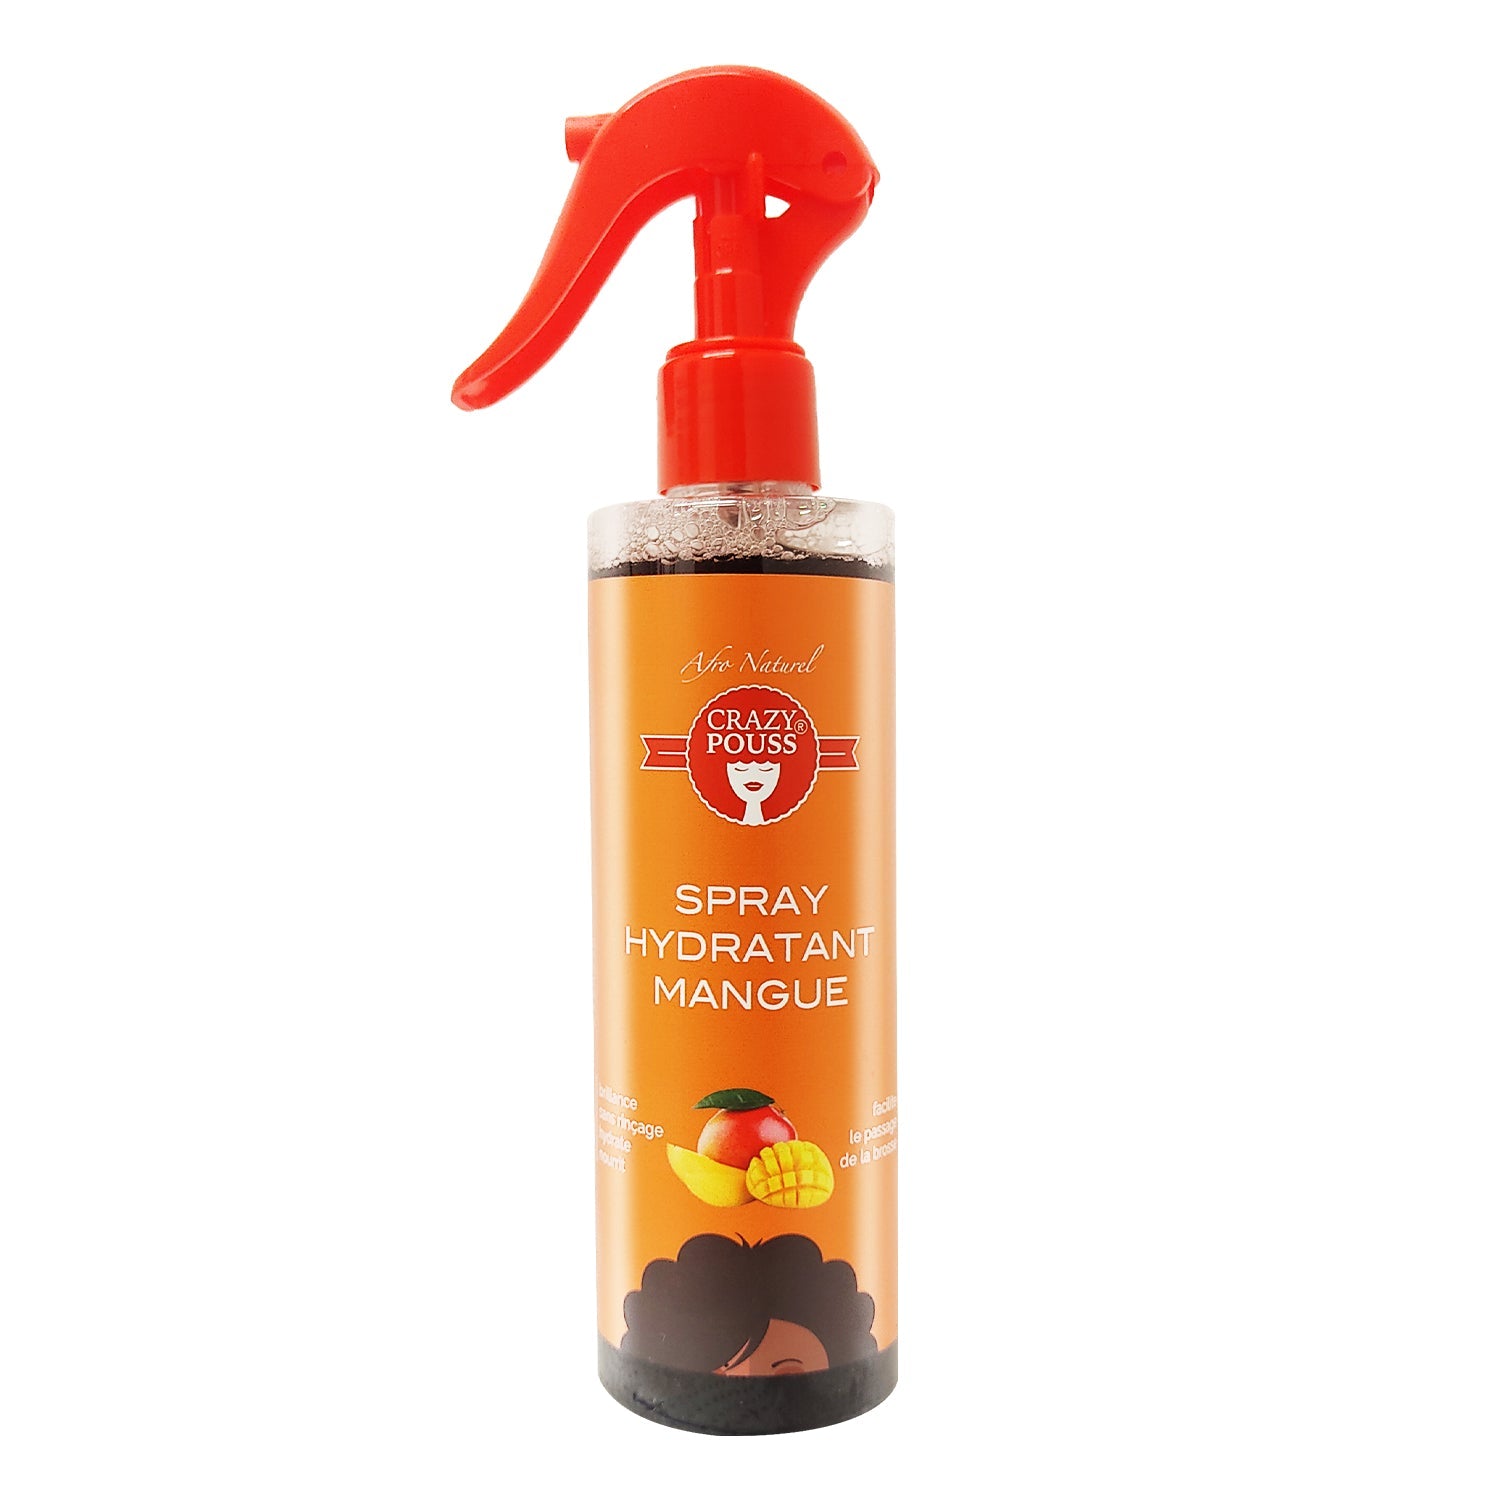 CRAZY POUSS - Spray hydratant à la mangue - Soin capillaire qui hydrate, nourrit et fortifie vos cheveux